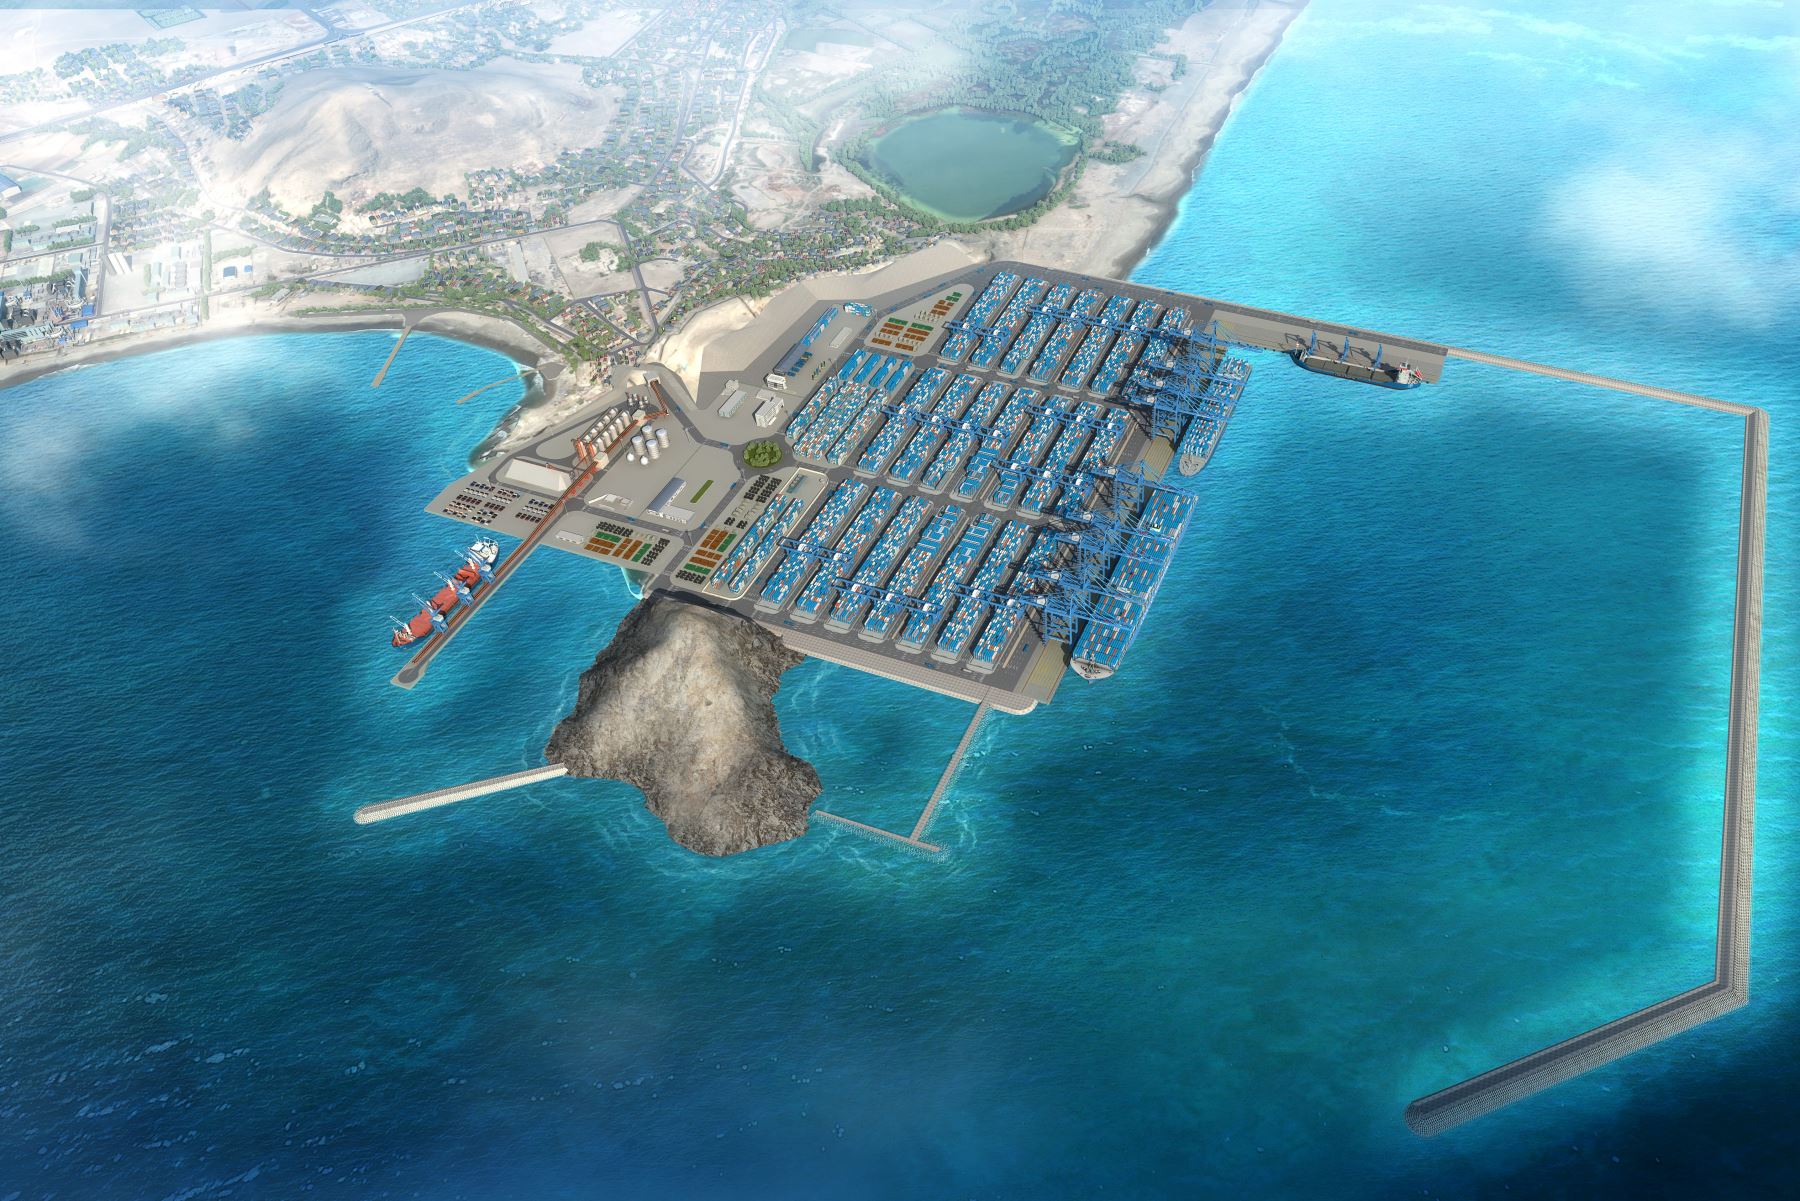 Peru port project